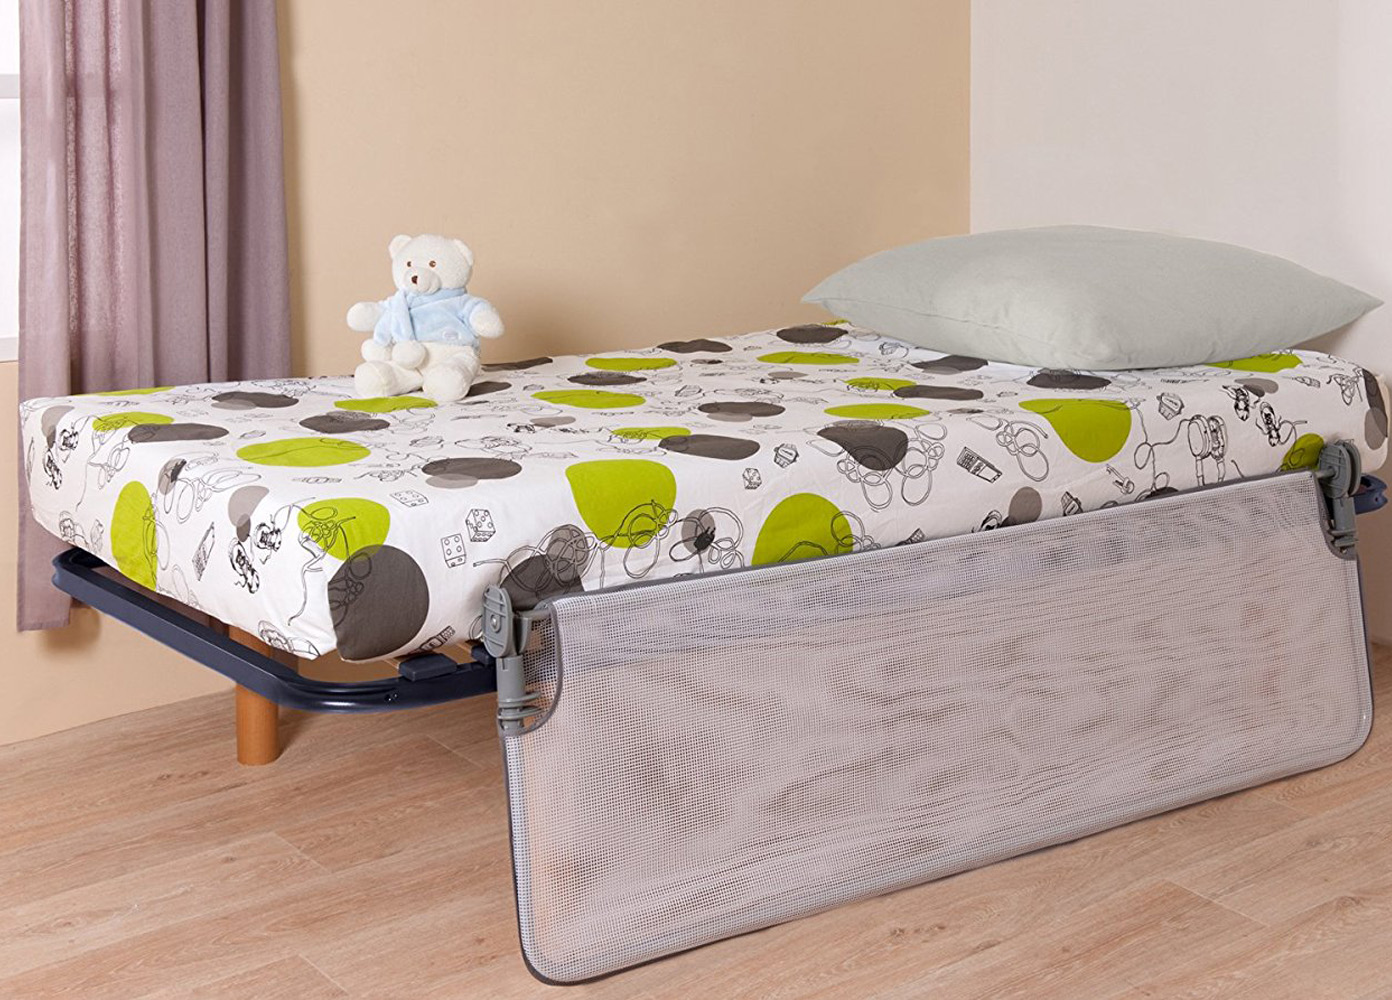 Барьер для детской кроватки Safety 1st Extra large Bed Rail